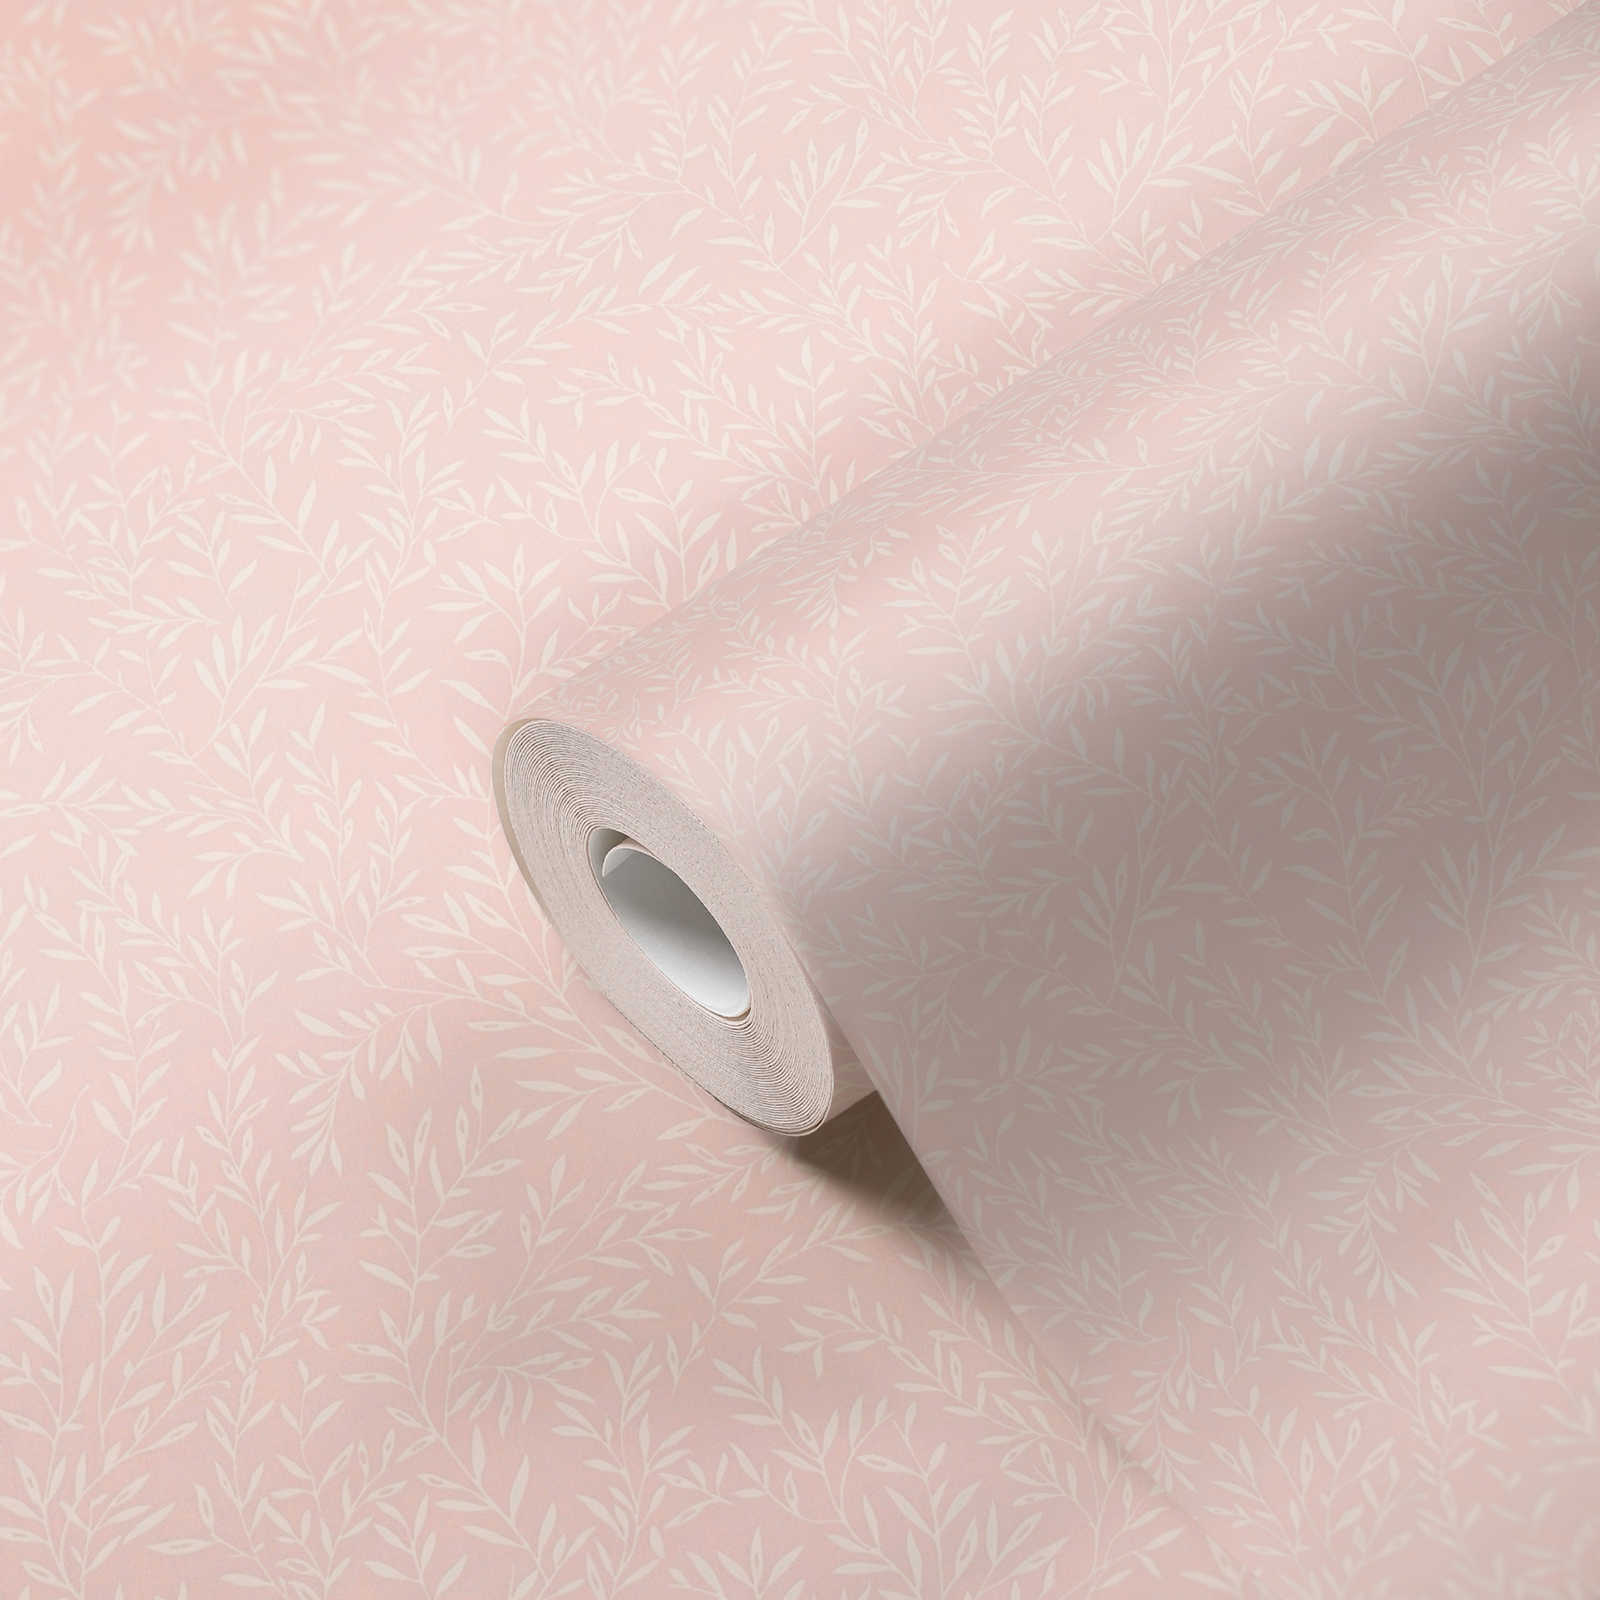             Papier peint champêtre avec motif de rinceaux - rose, blanc
        